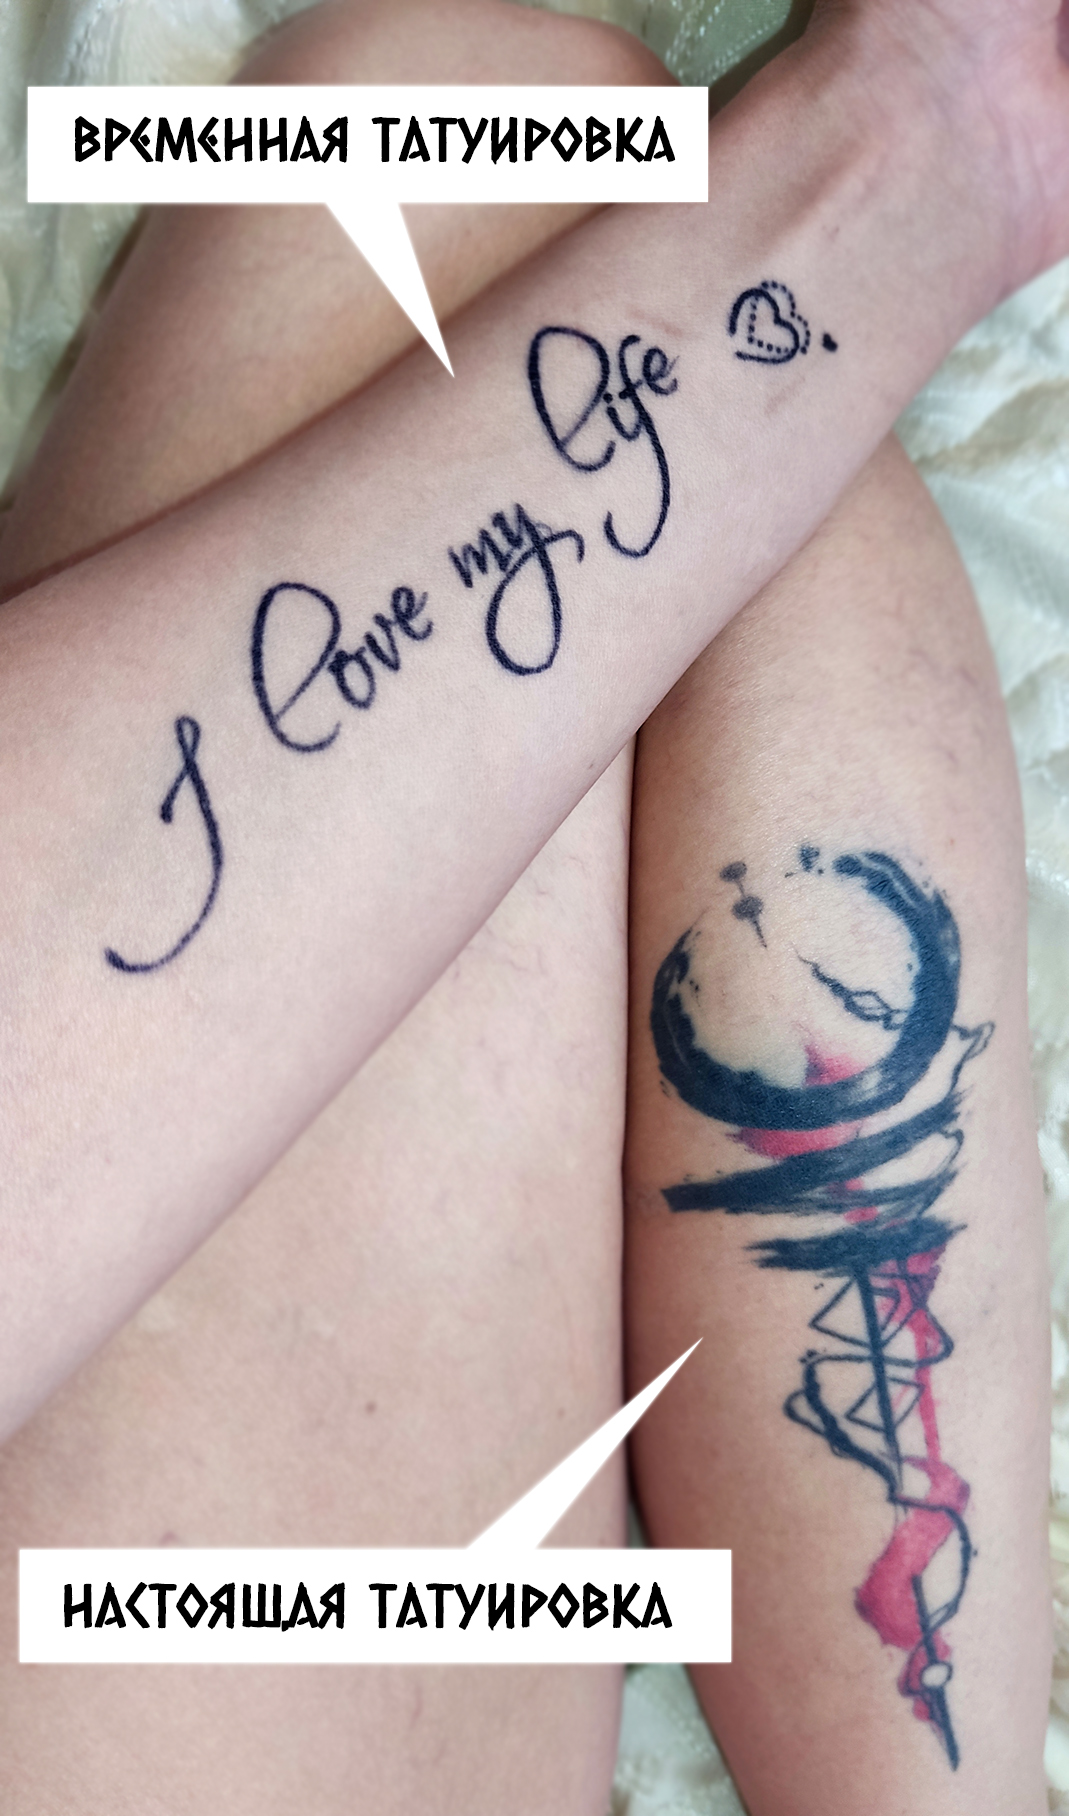 Разница между настоящей и временной татуировкой